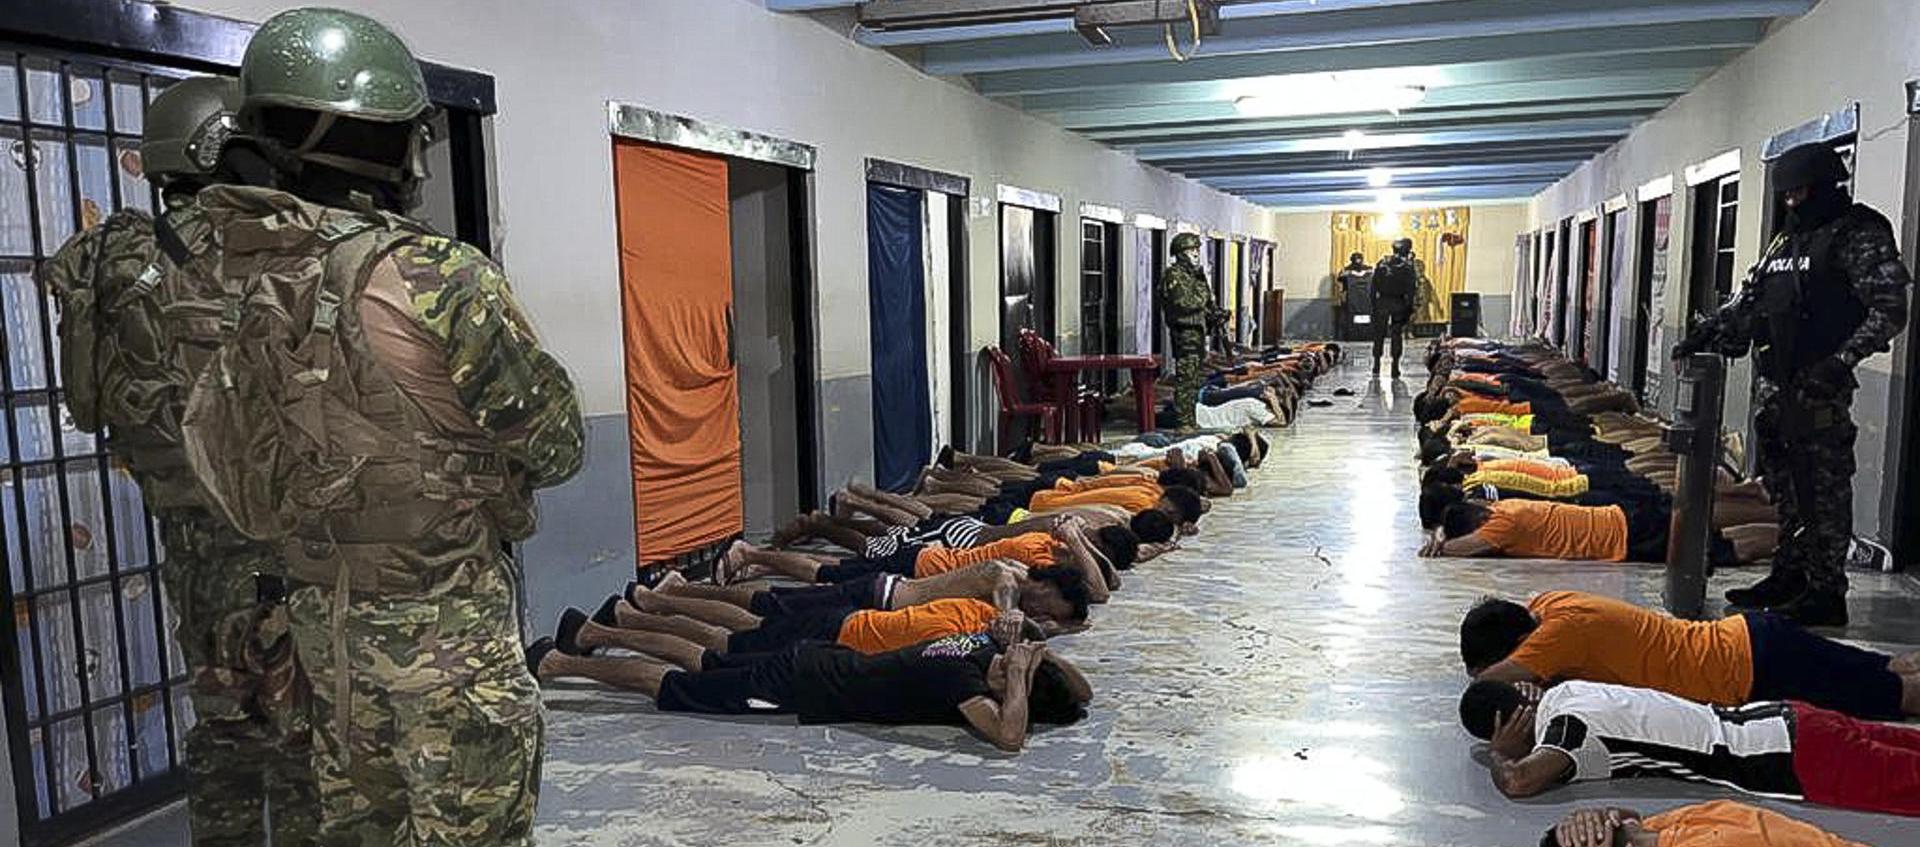 Inspección de las autoridades en la cárcel de Ecuador.